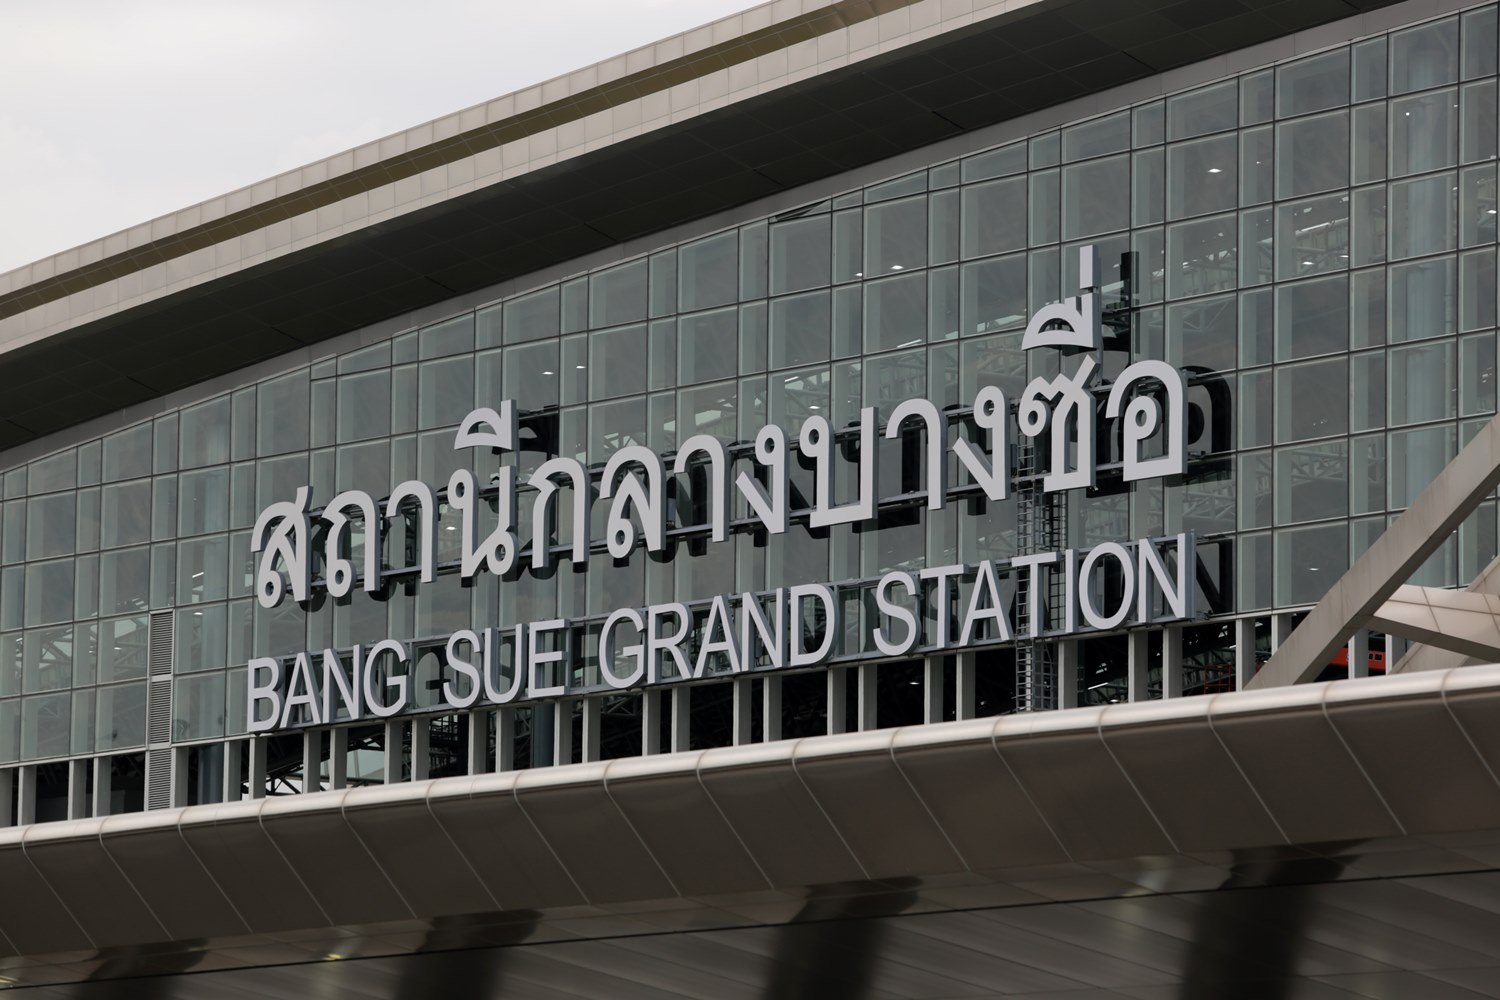 รู้จัก "สถานีกลางบางซื่อ" ในฐานะ “สถานีรถไฟหลัก” แห่งใหม่ของไทย